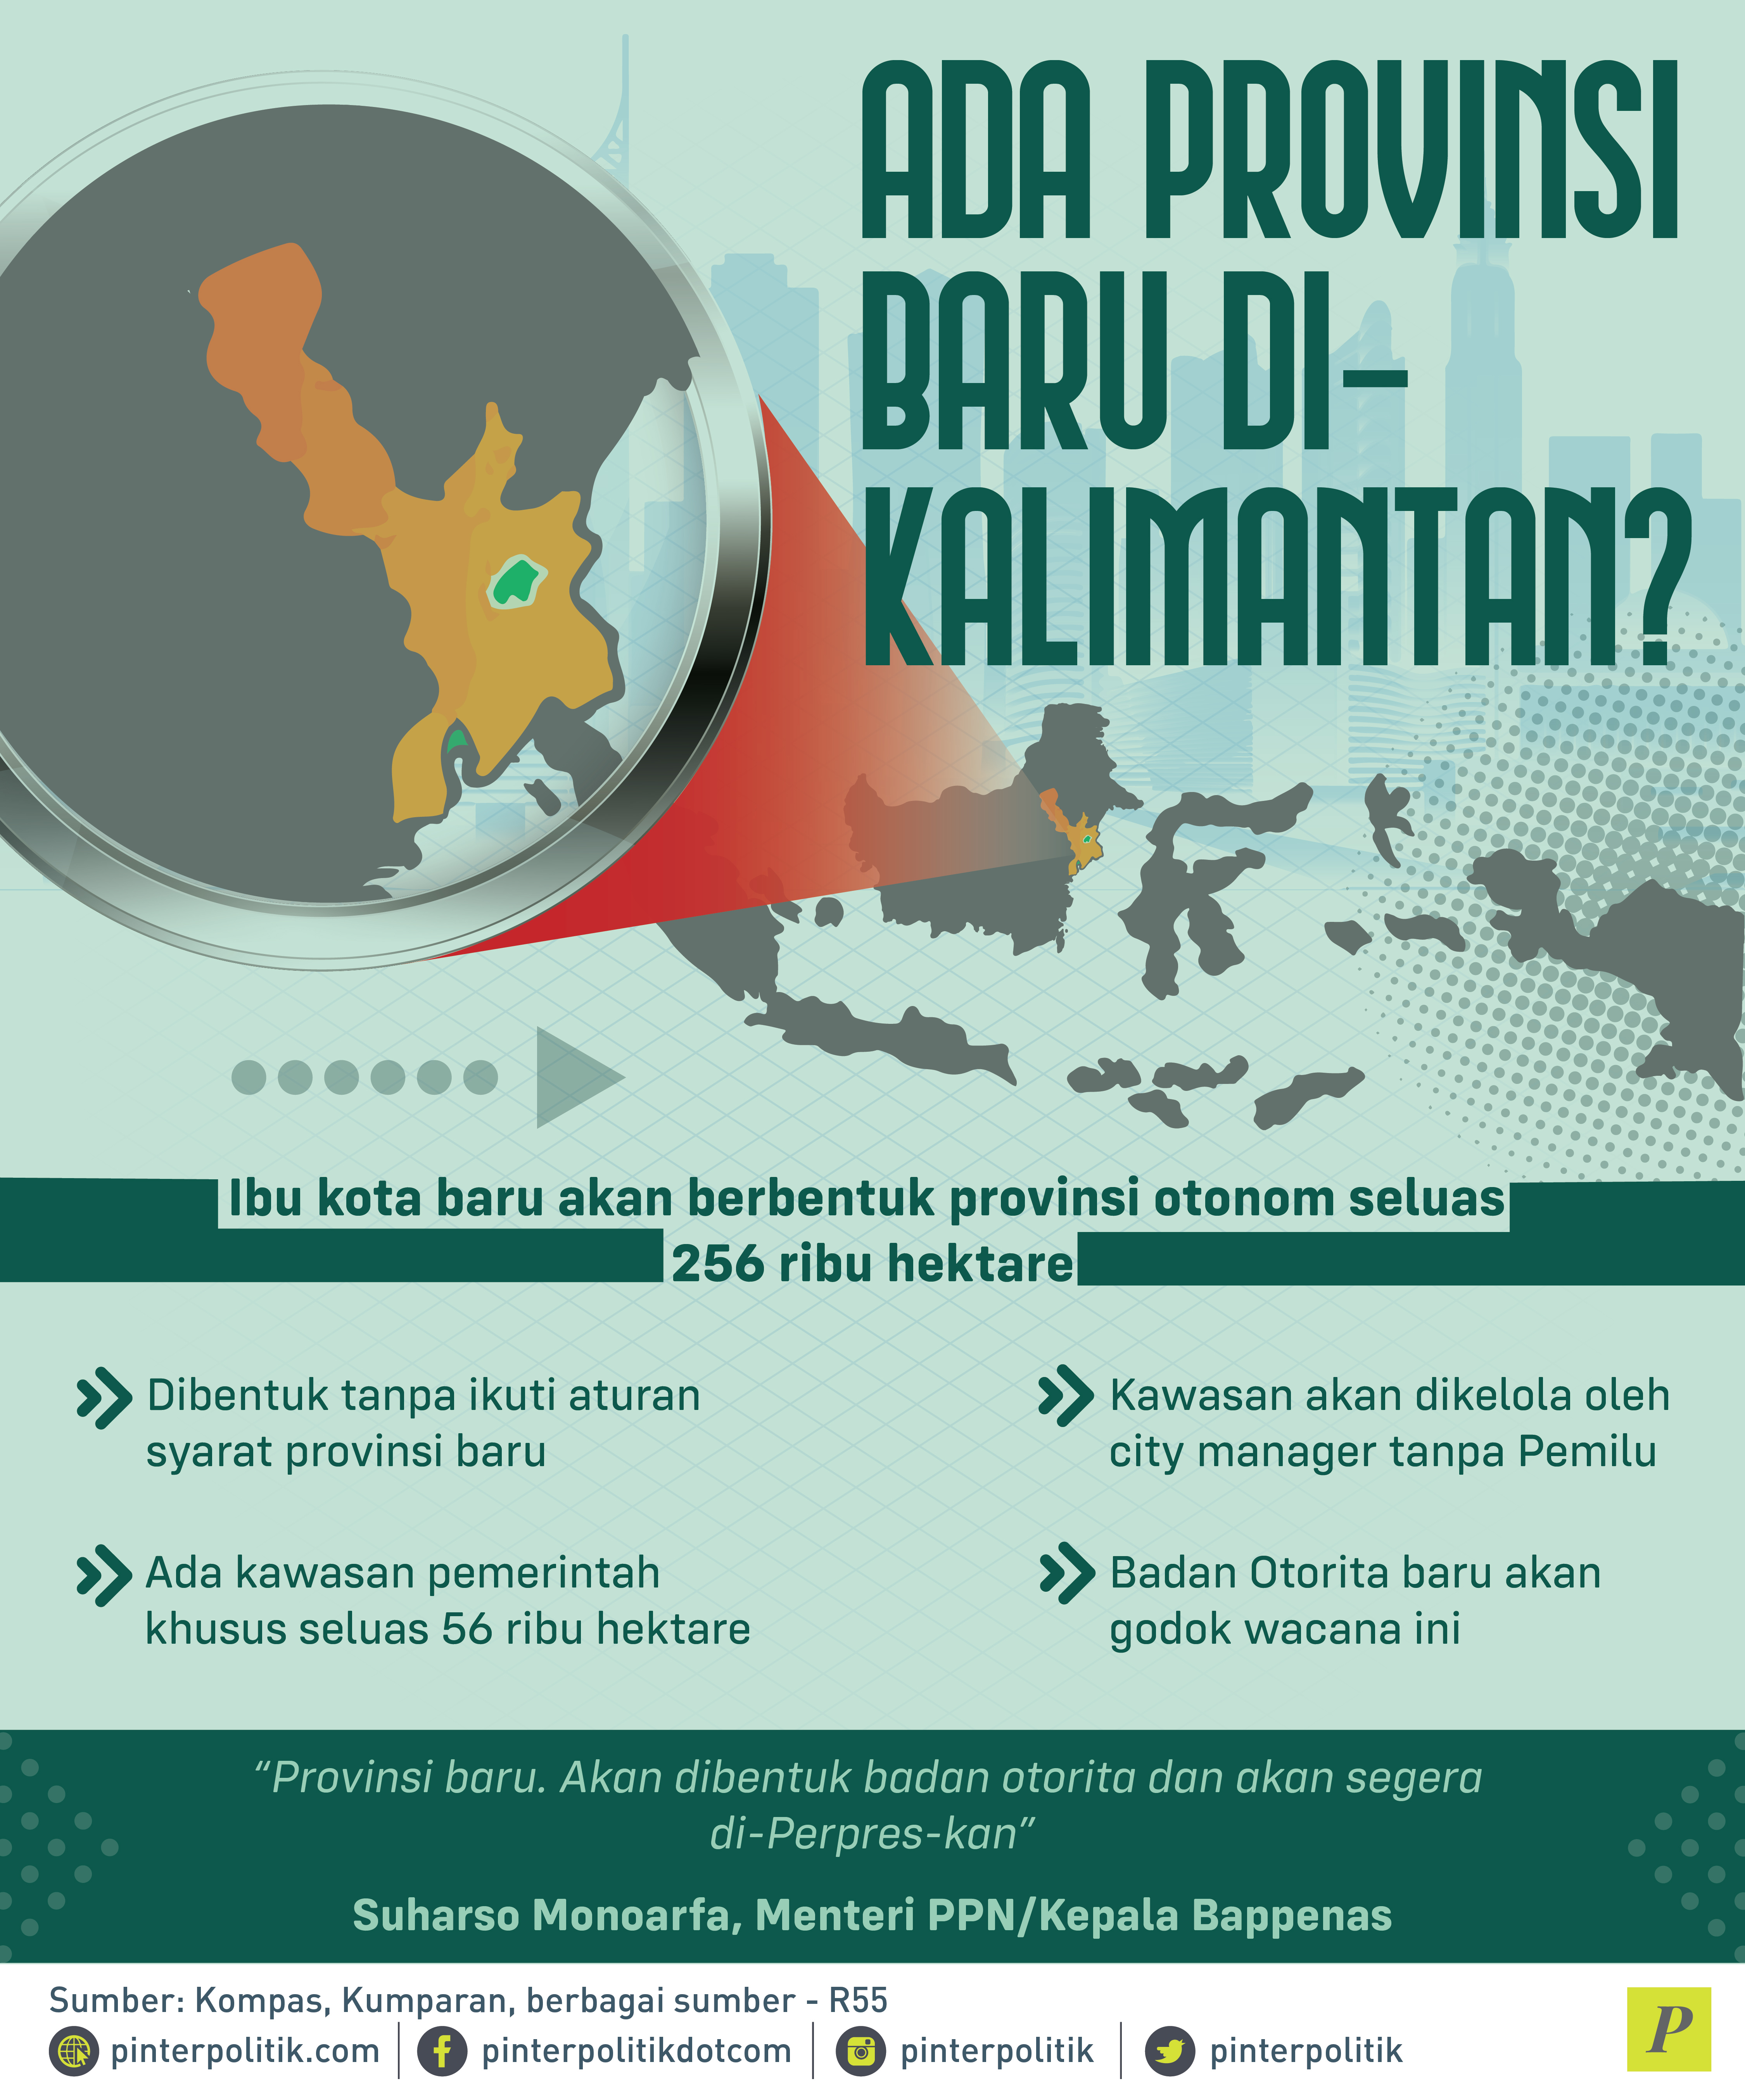 Ibu kota baru di Kalimantan akan berbentuk provinsi otonom